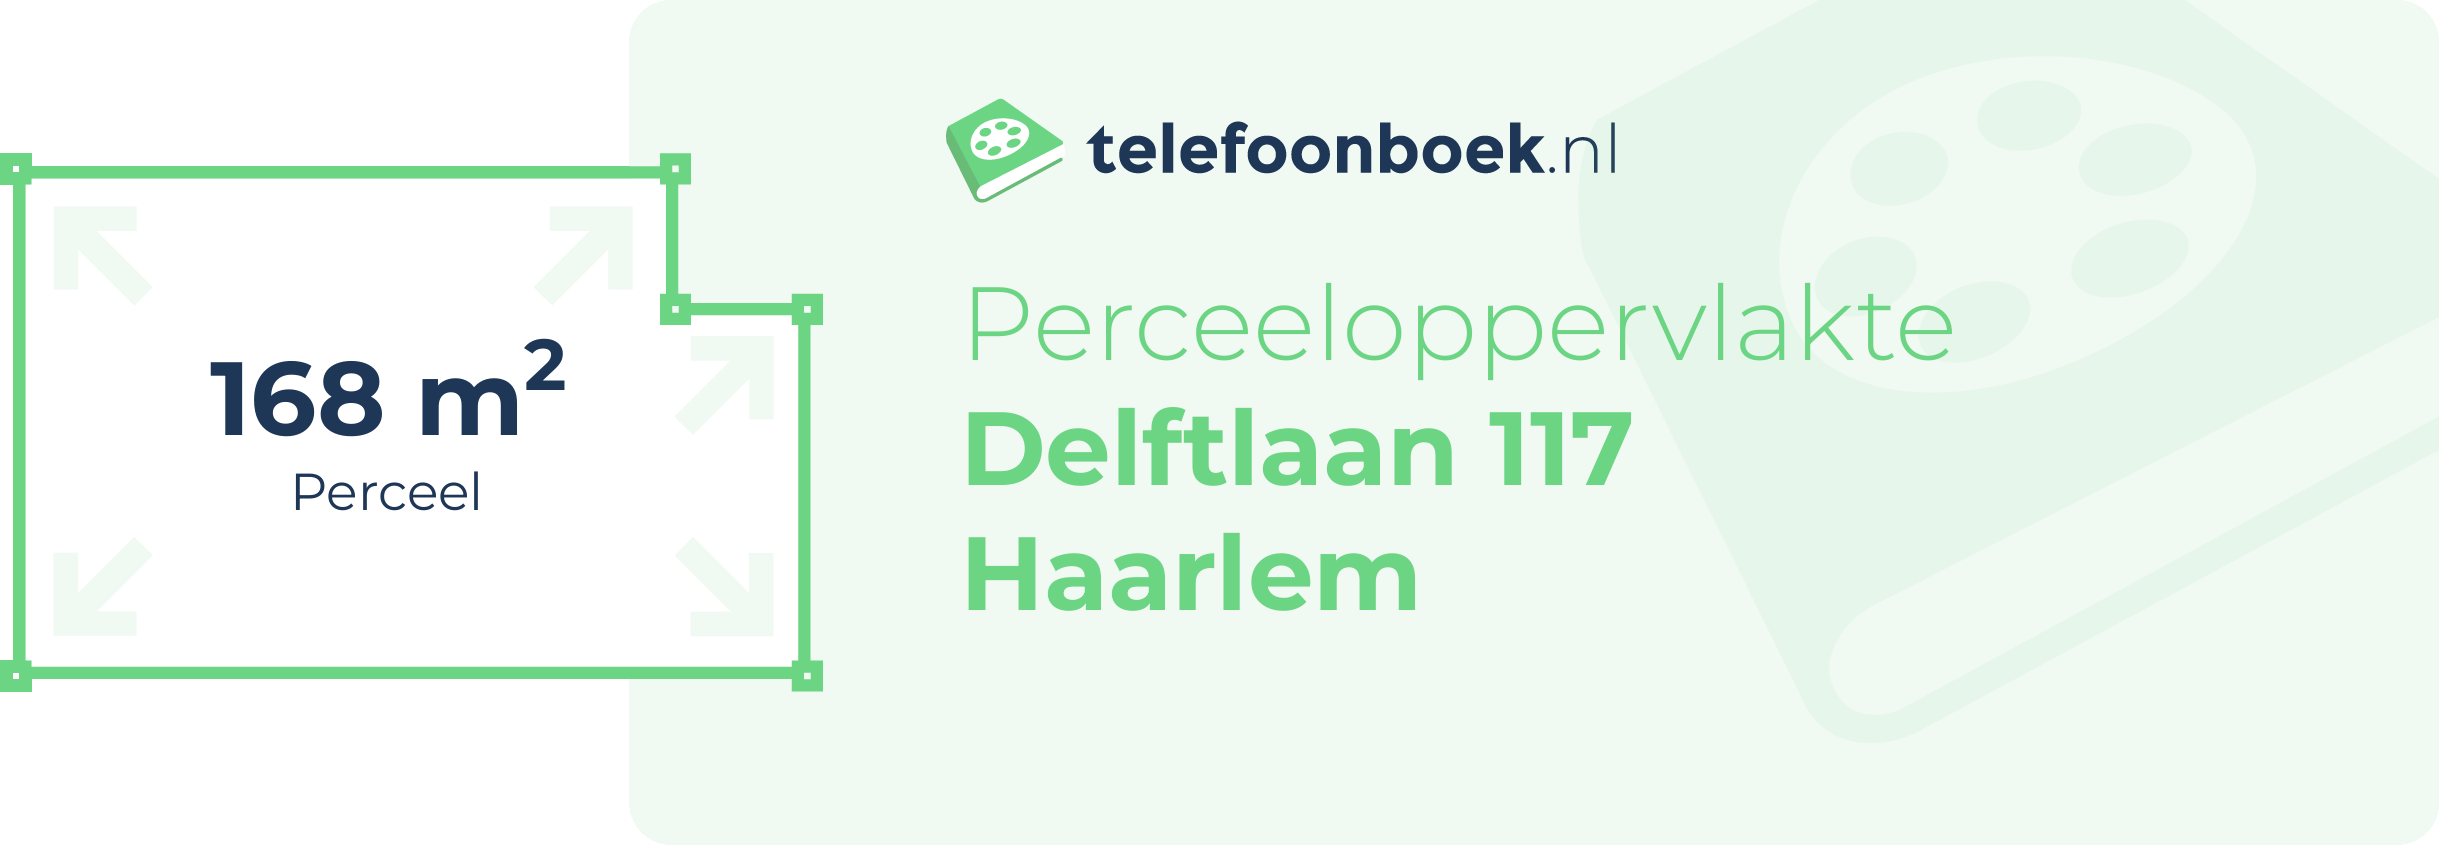 Perceeloppervlakte Delftlaan 117 Haarlem